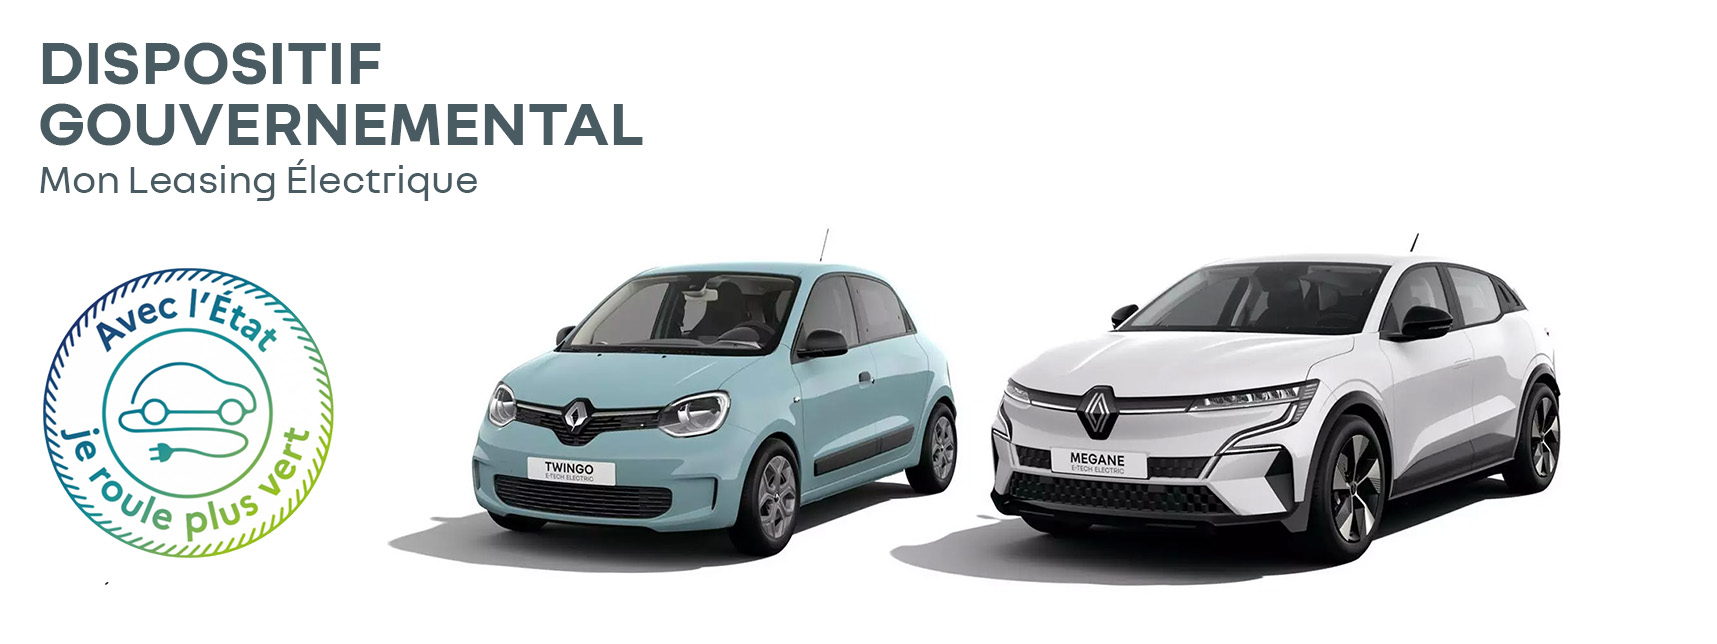 Mon leasing électrique, les offres Renault !